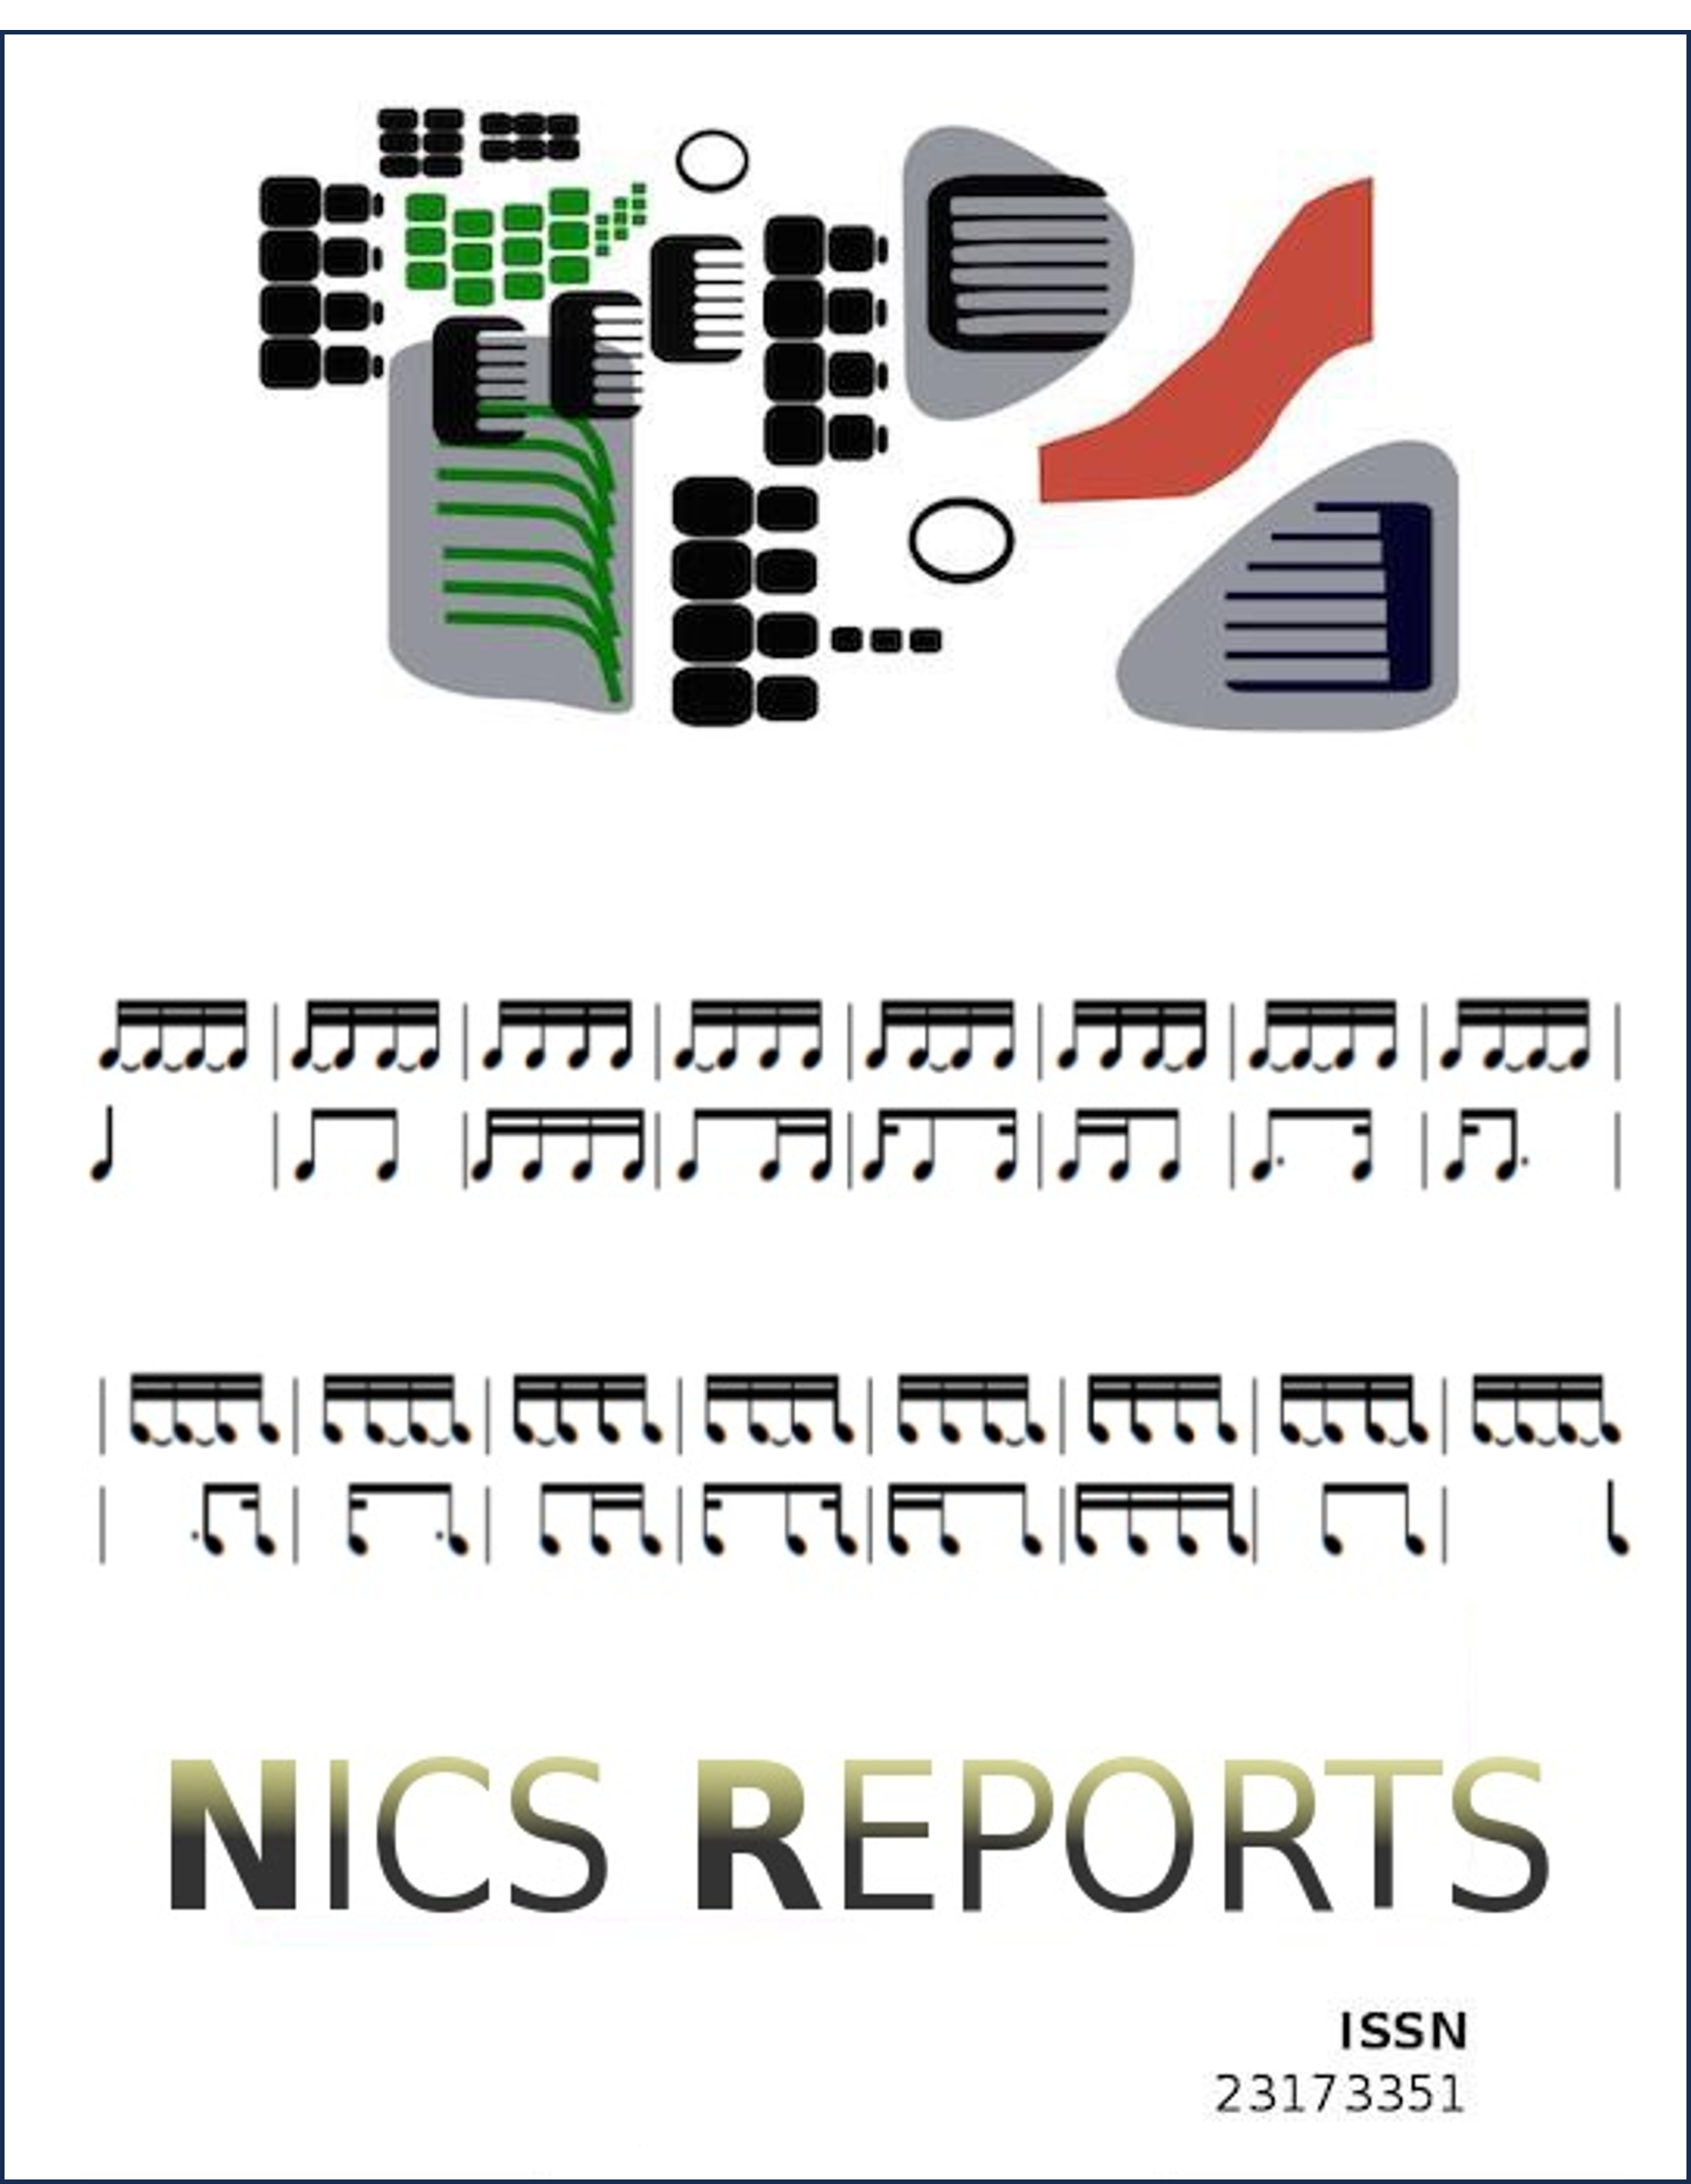 Capa da revista NICS com claves musicais